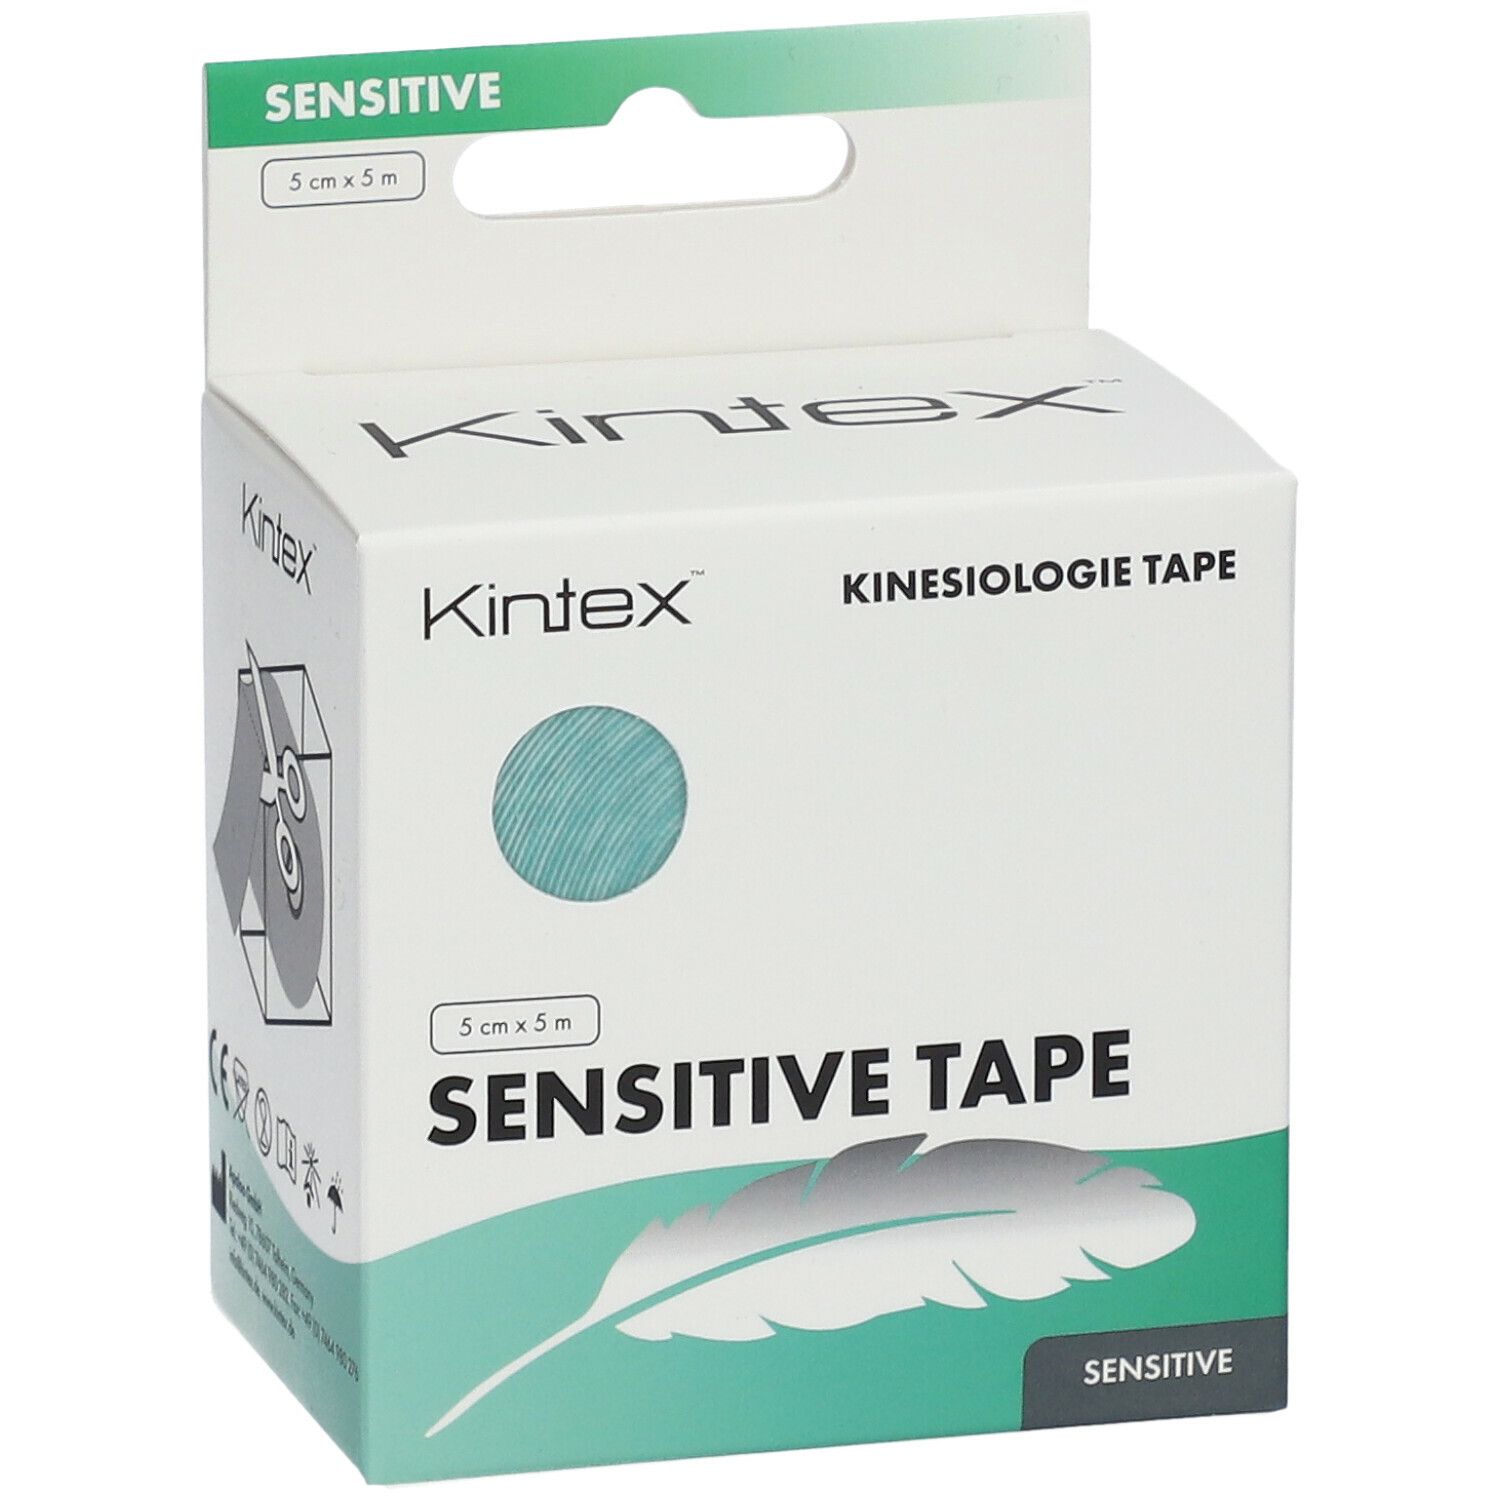 [Ich mag das] Kintex™ Kinesiology Tape Sensitive - APOTHEKE SHOP 5 cm x 1 St 5